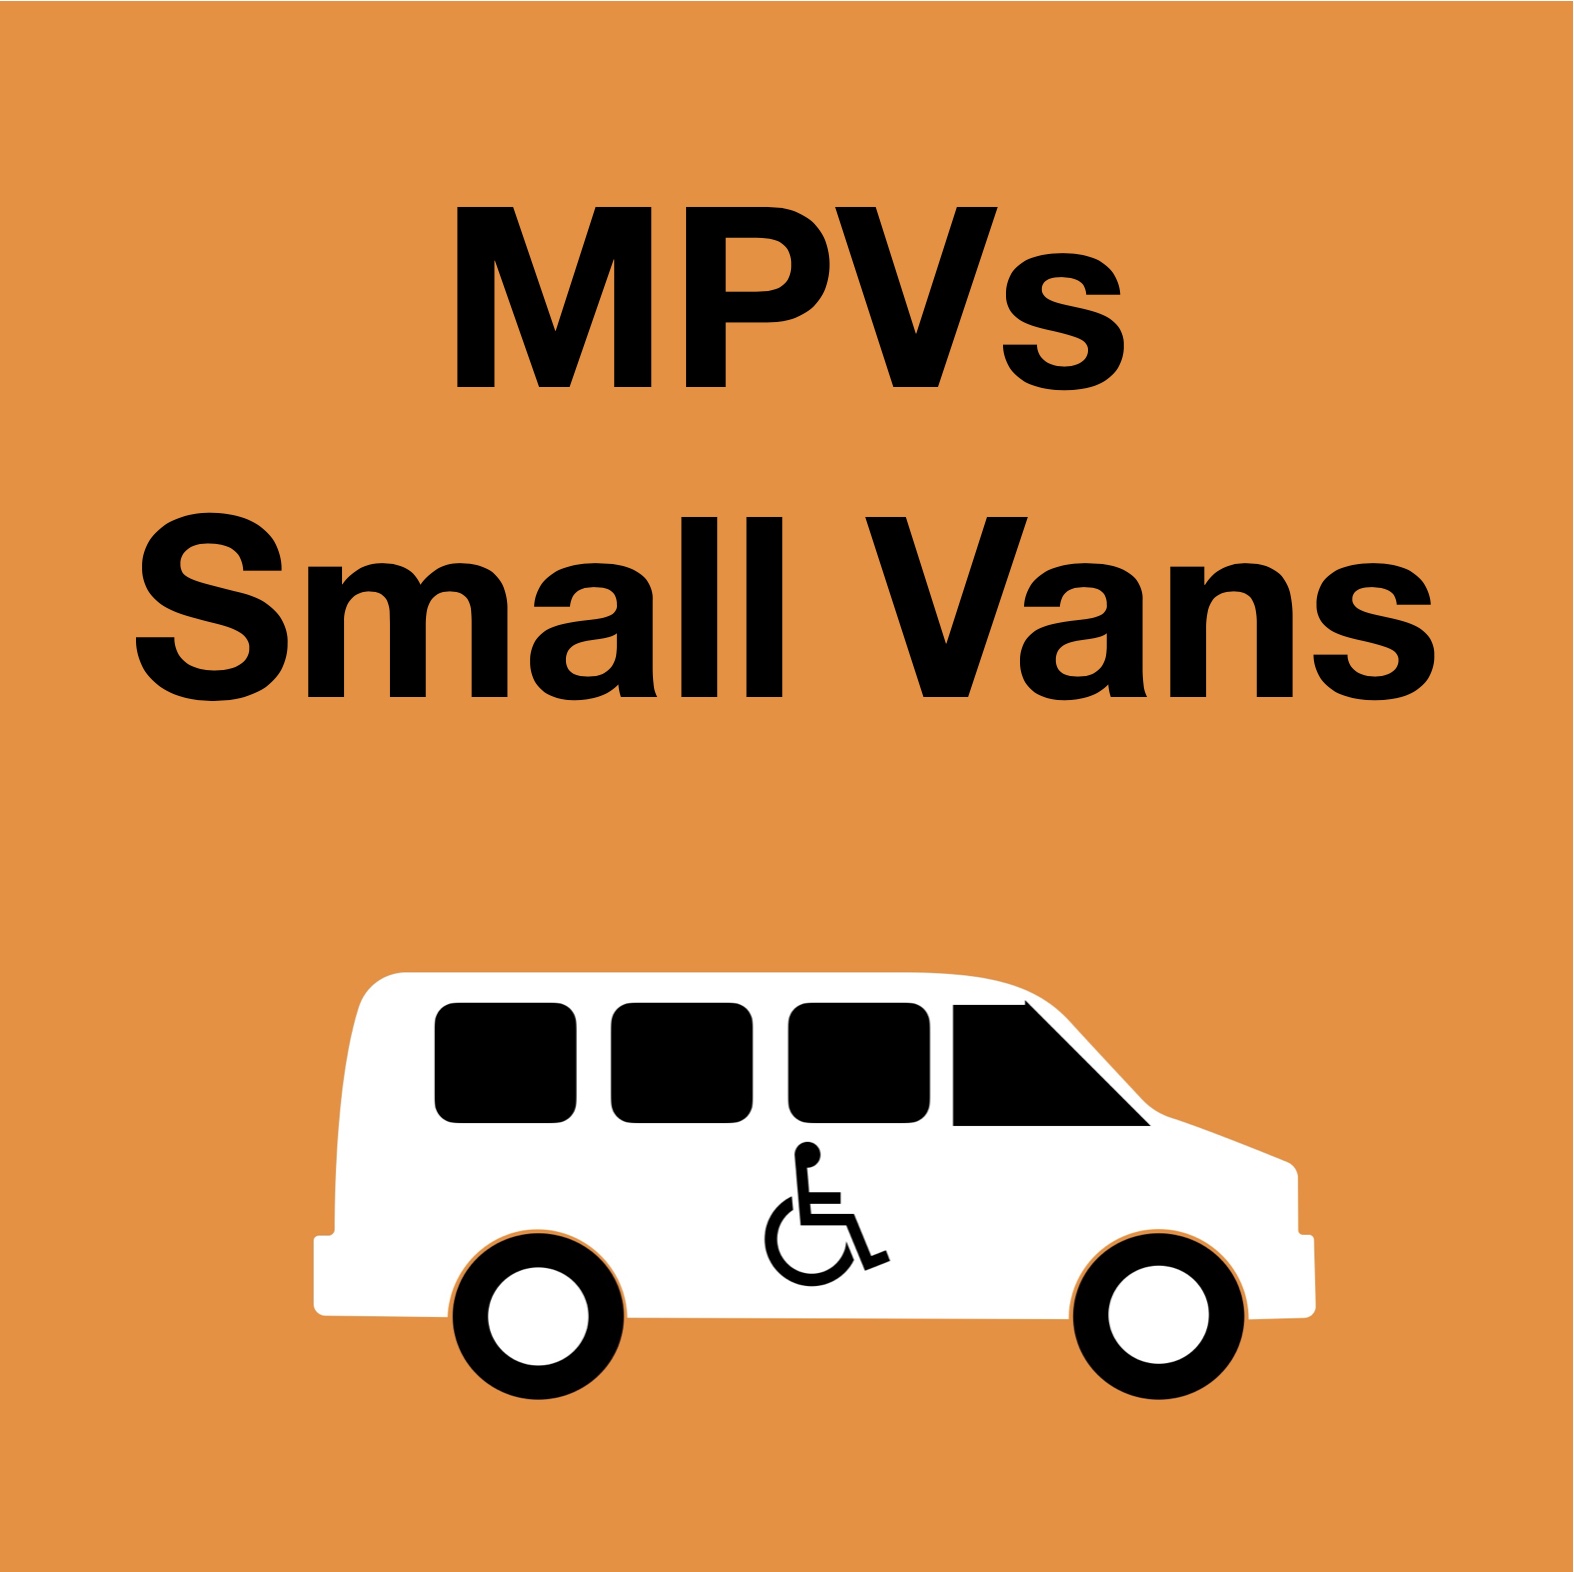 MPVs and Small Vans